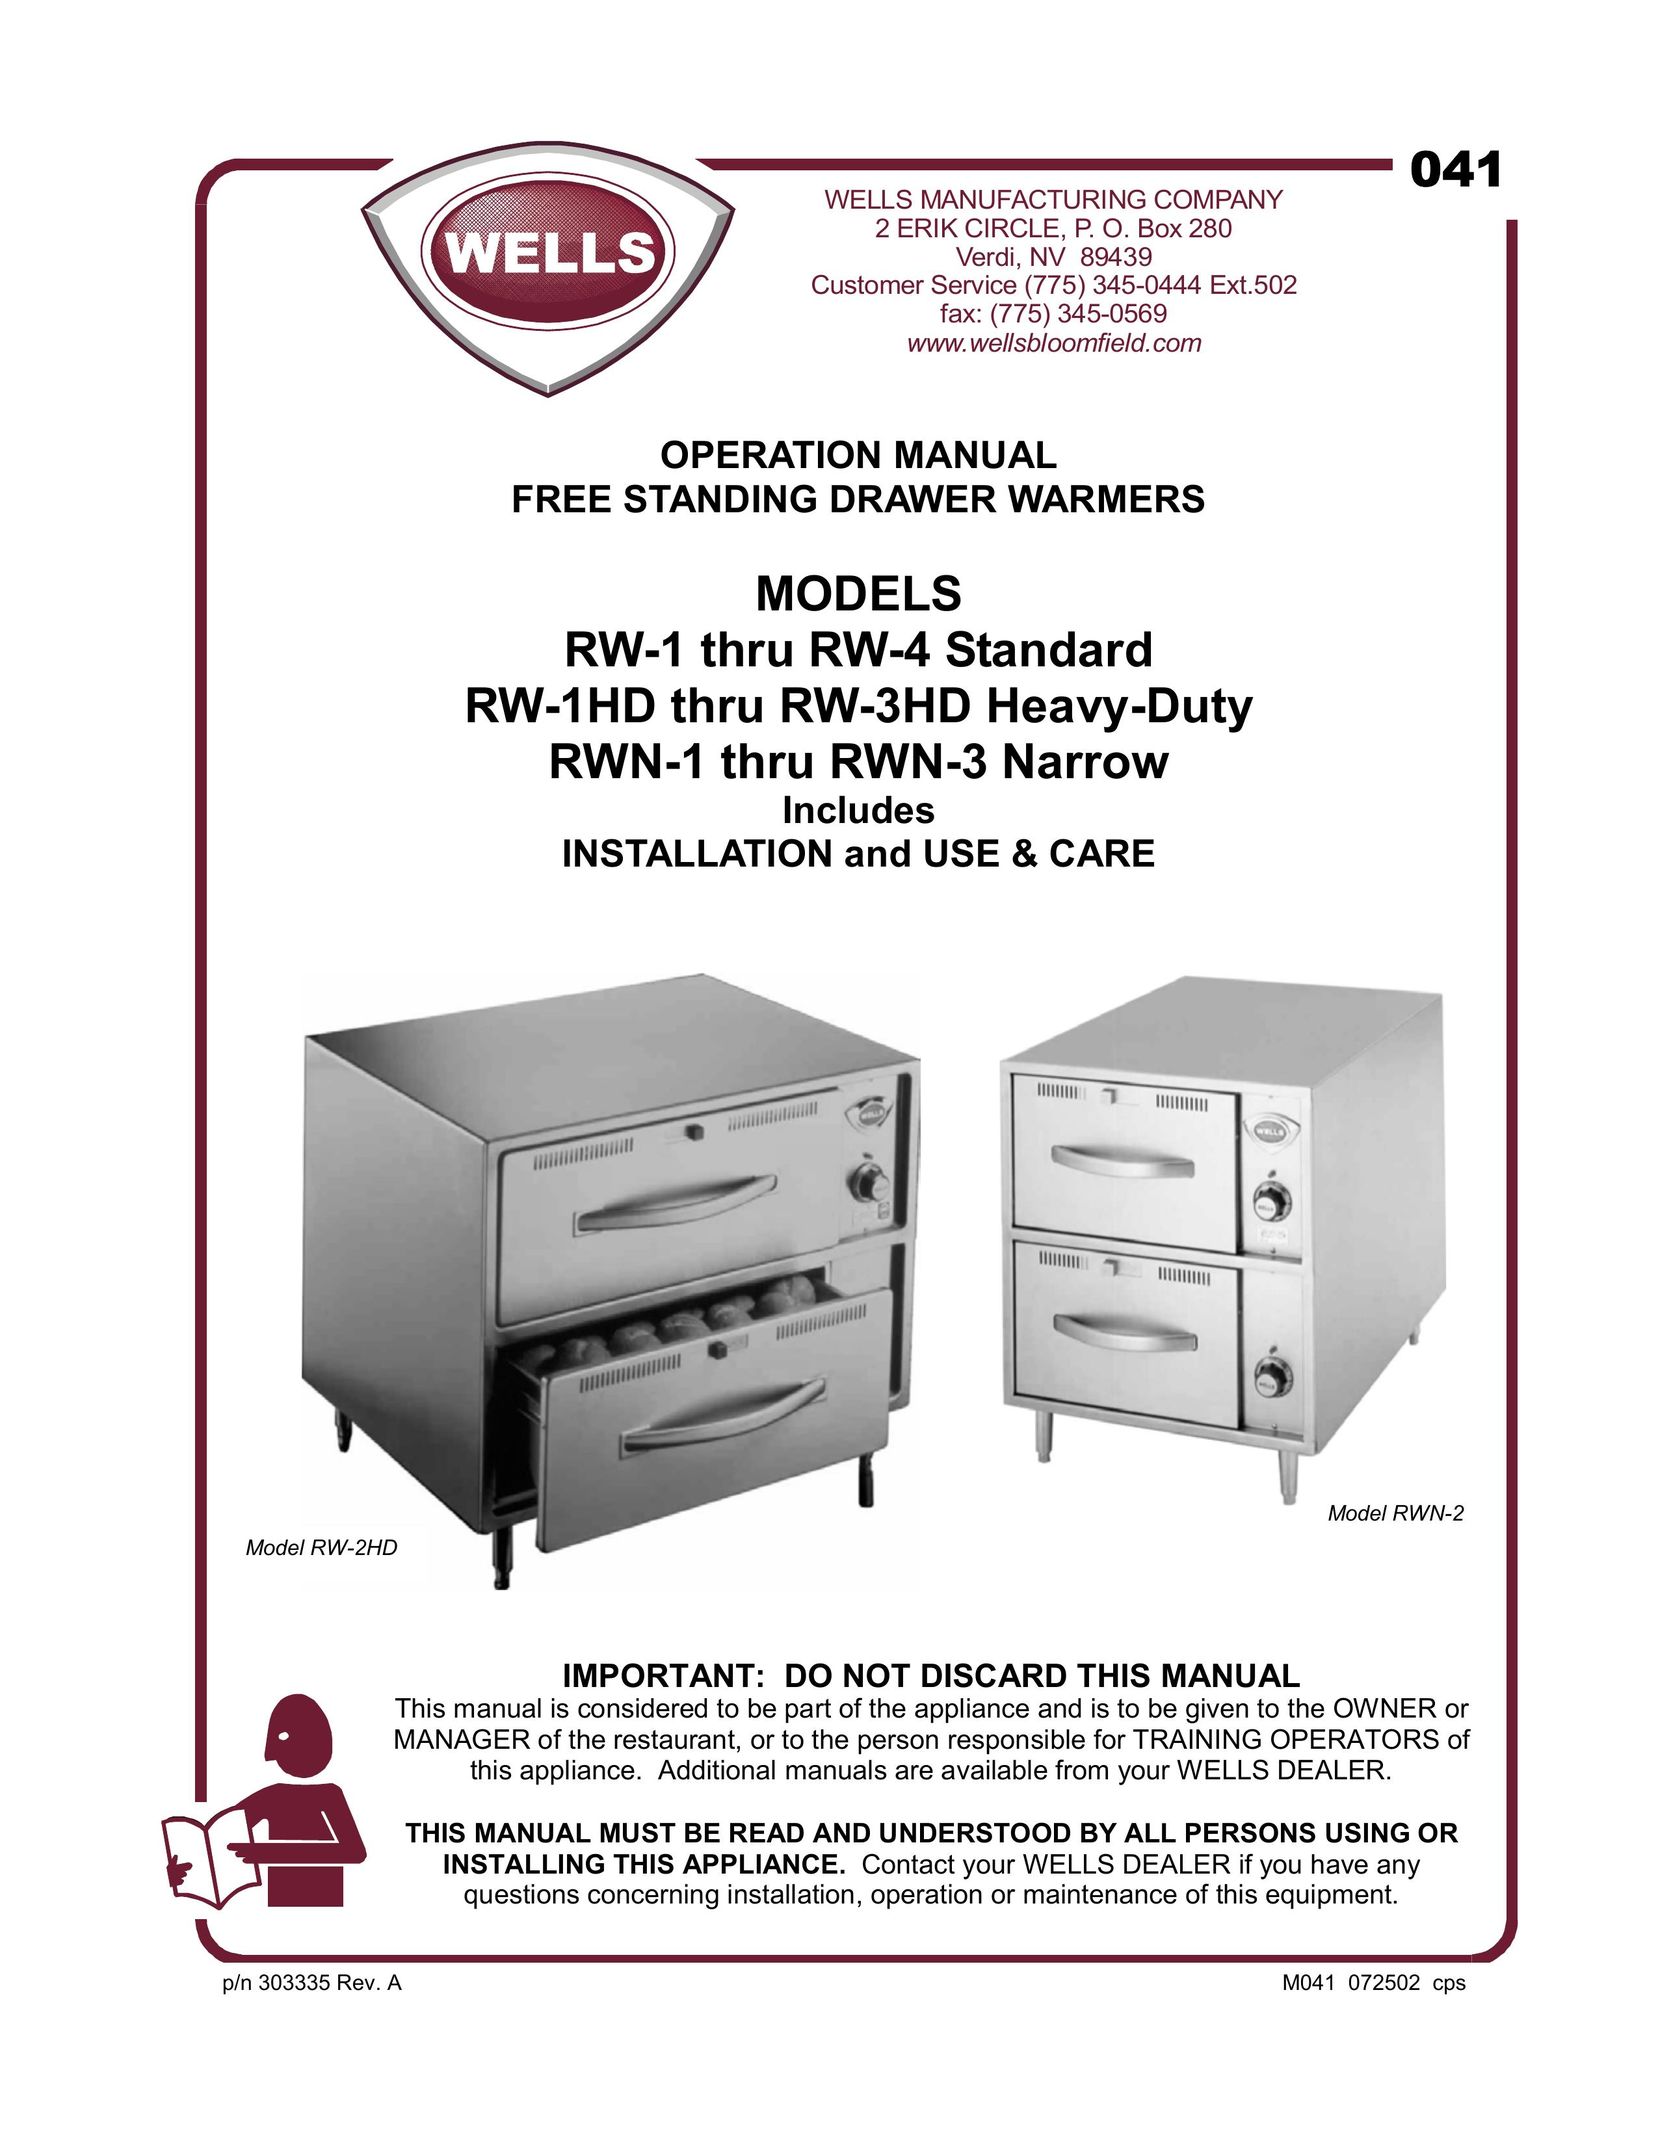 Wells RW-1HD thru RW-3HD Heavy-Duty Food Warmer User Manual